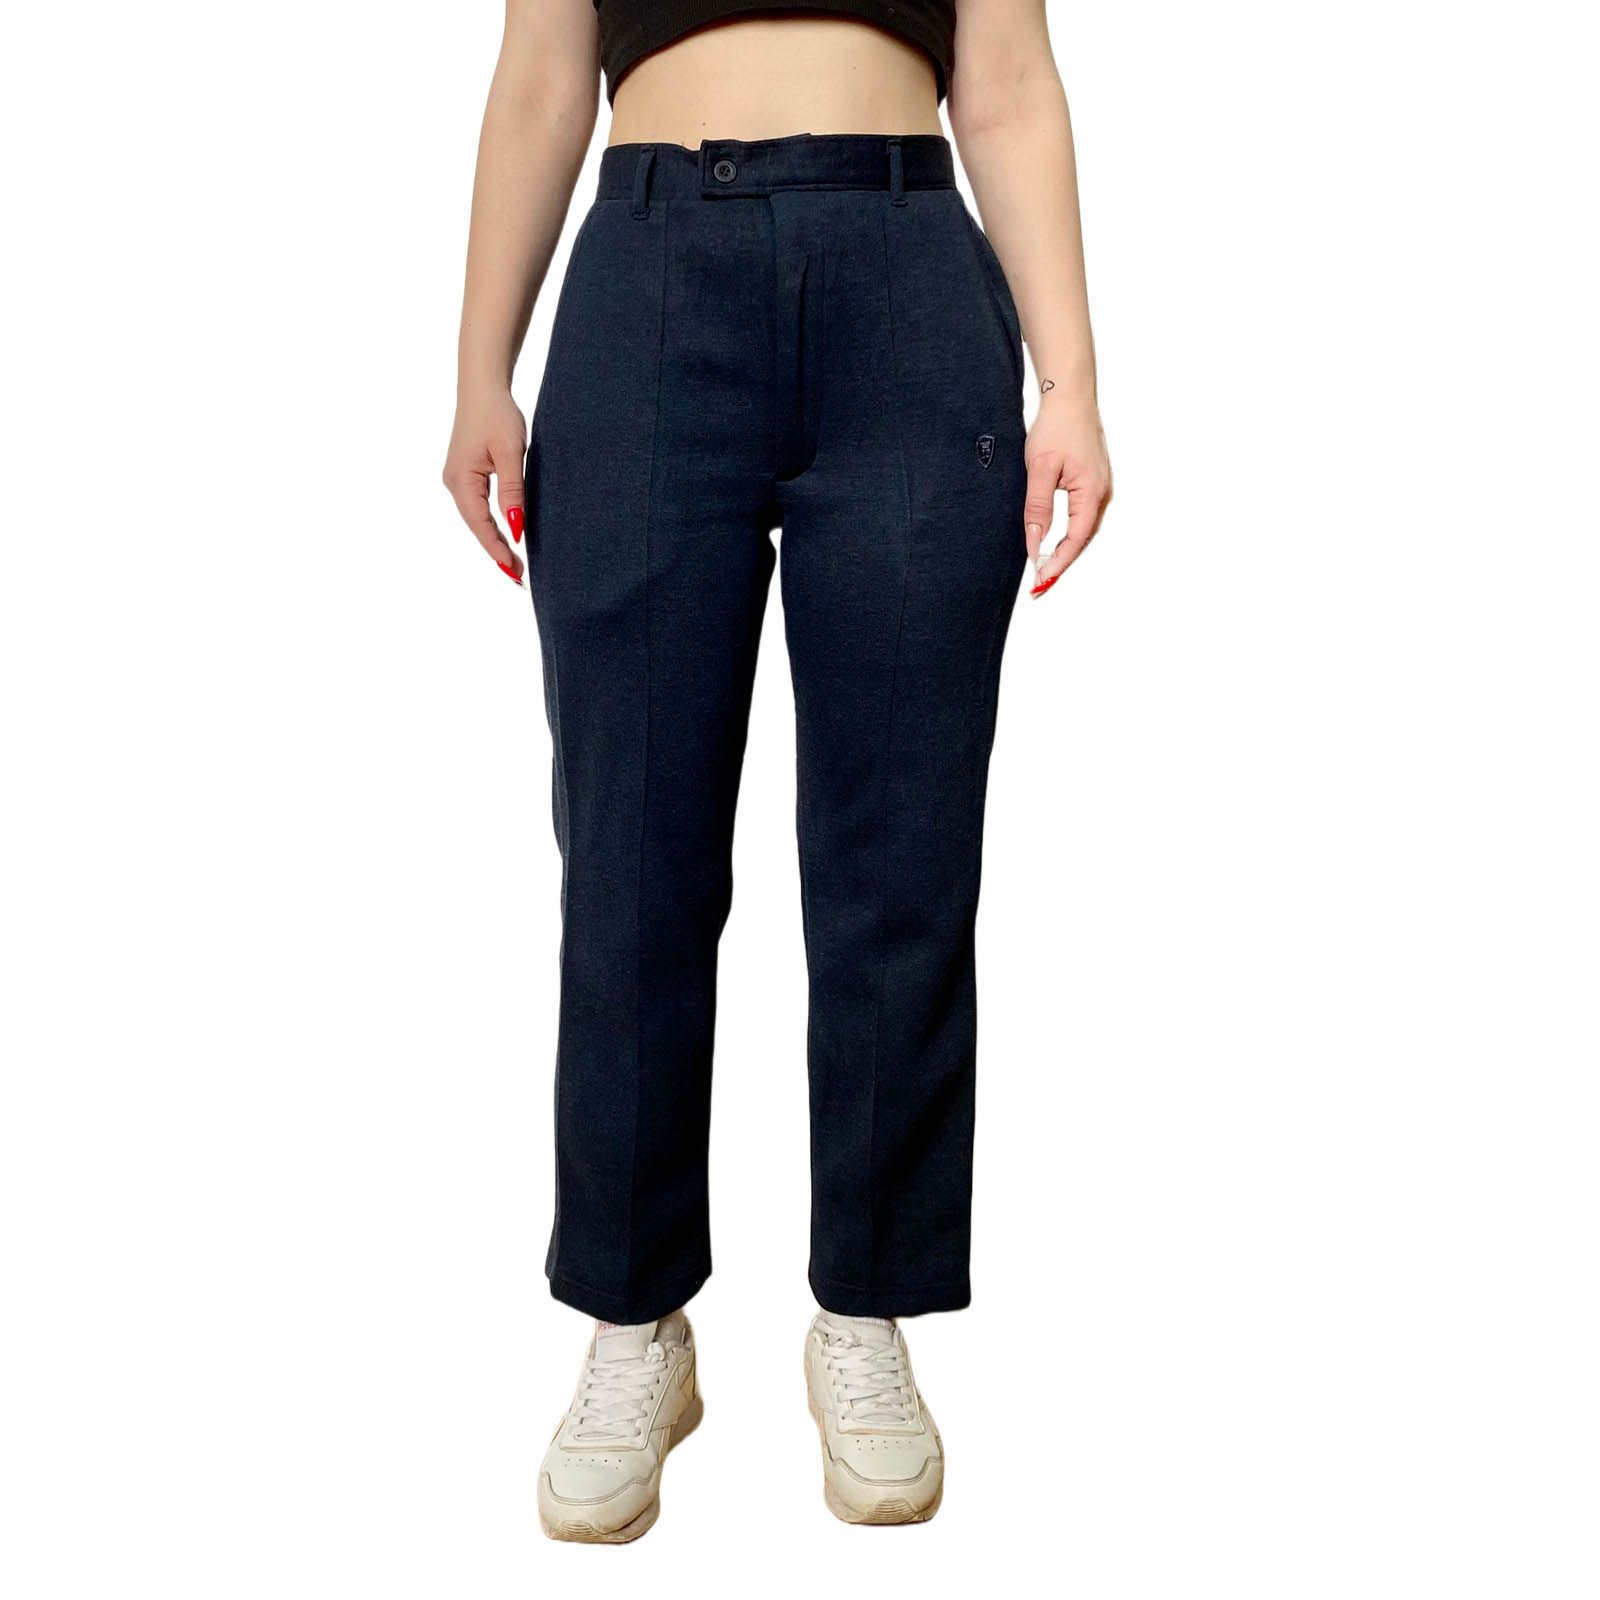 Заказать в интернете модные женские брюки ZealZip